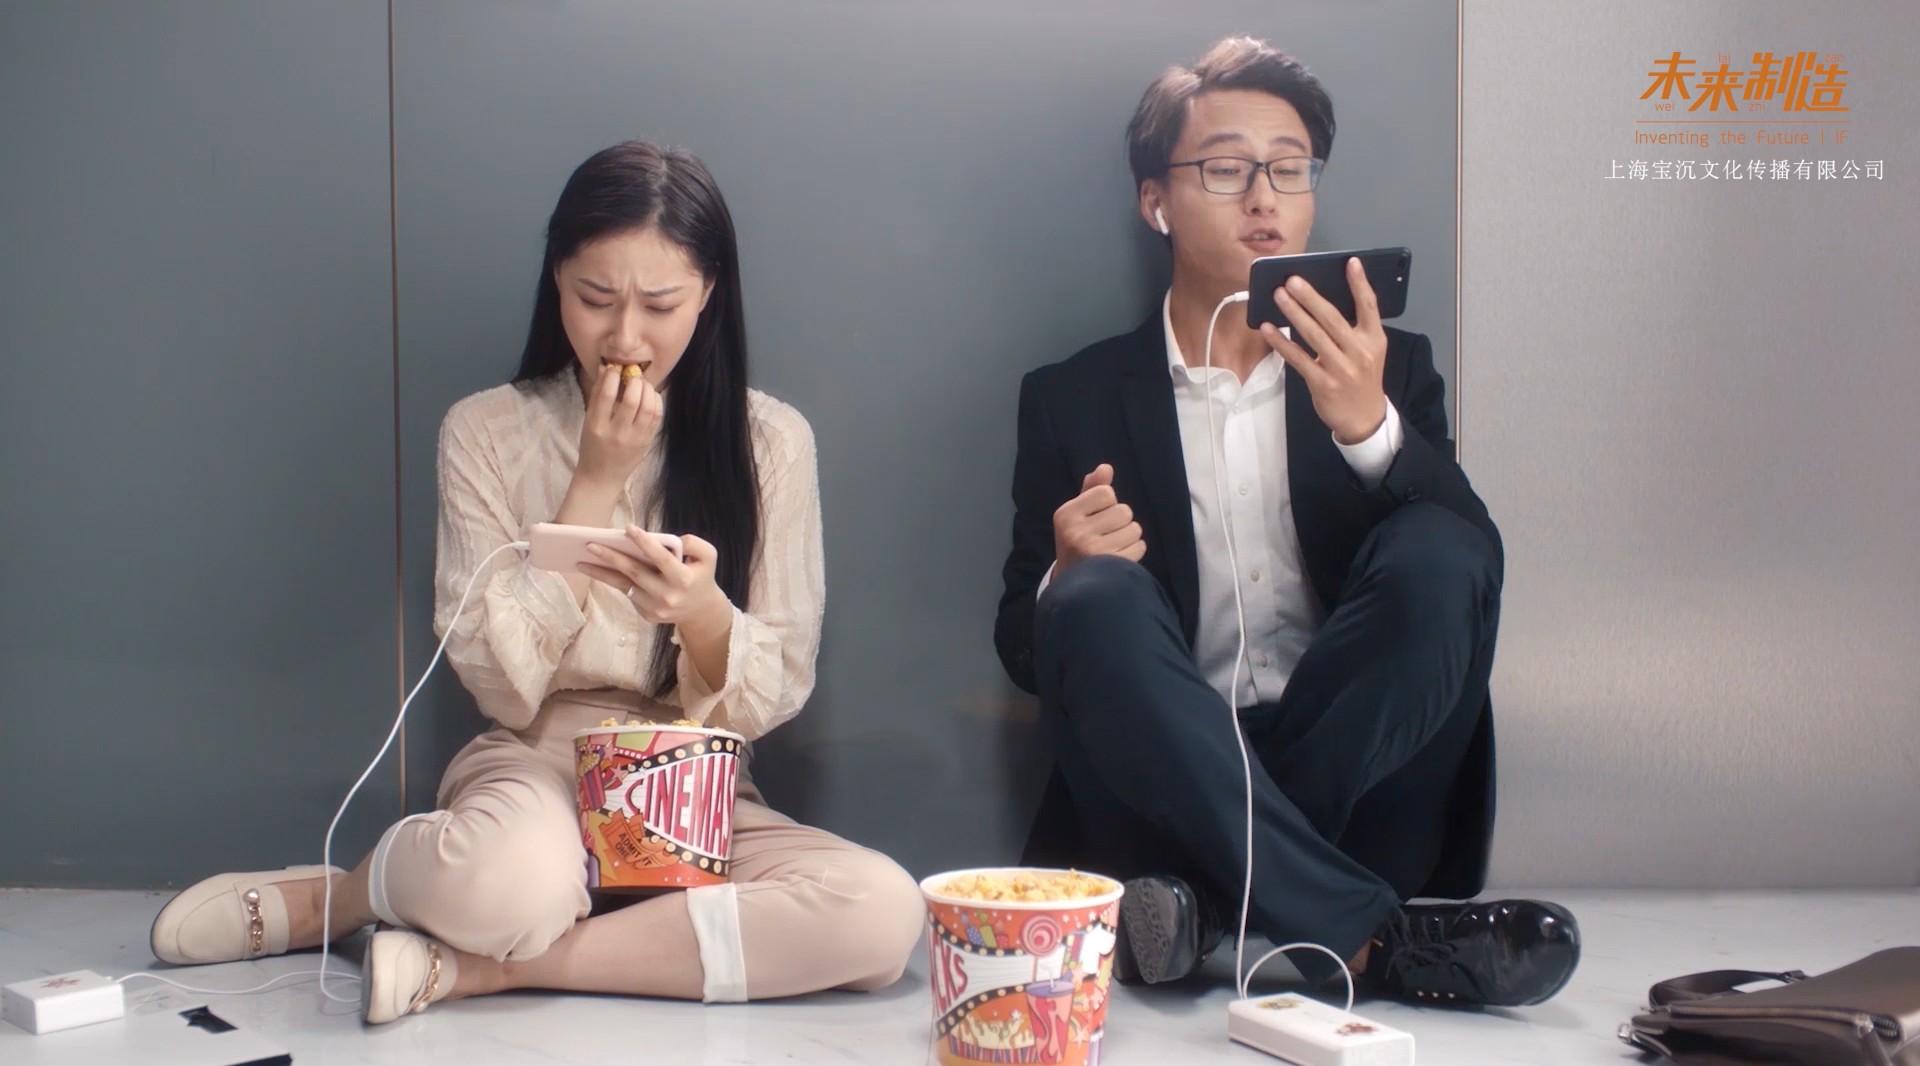 中国银行乐享生活手机APP温情广告片